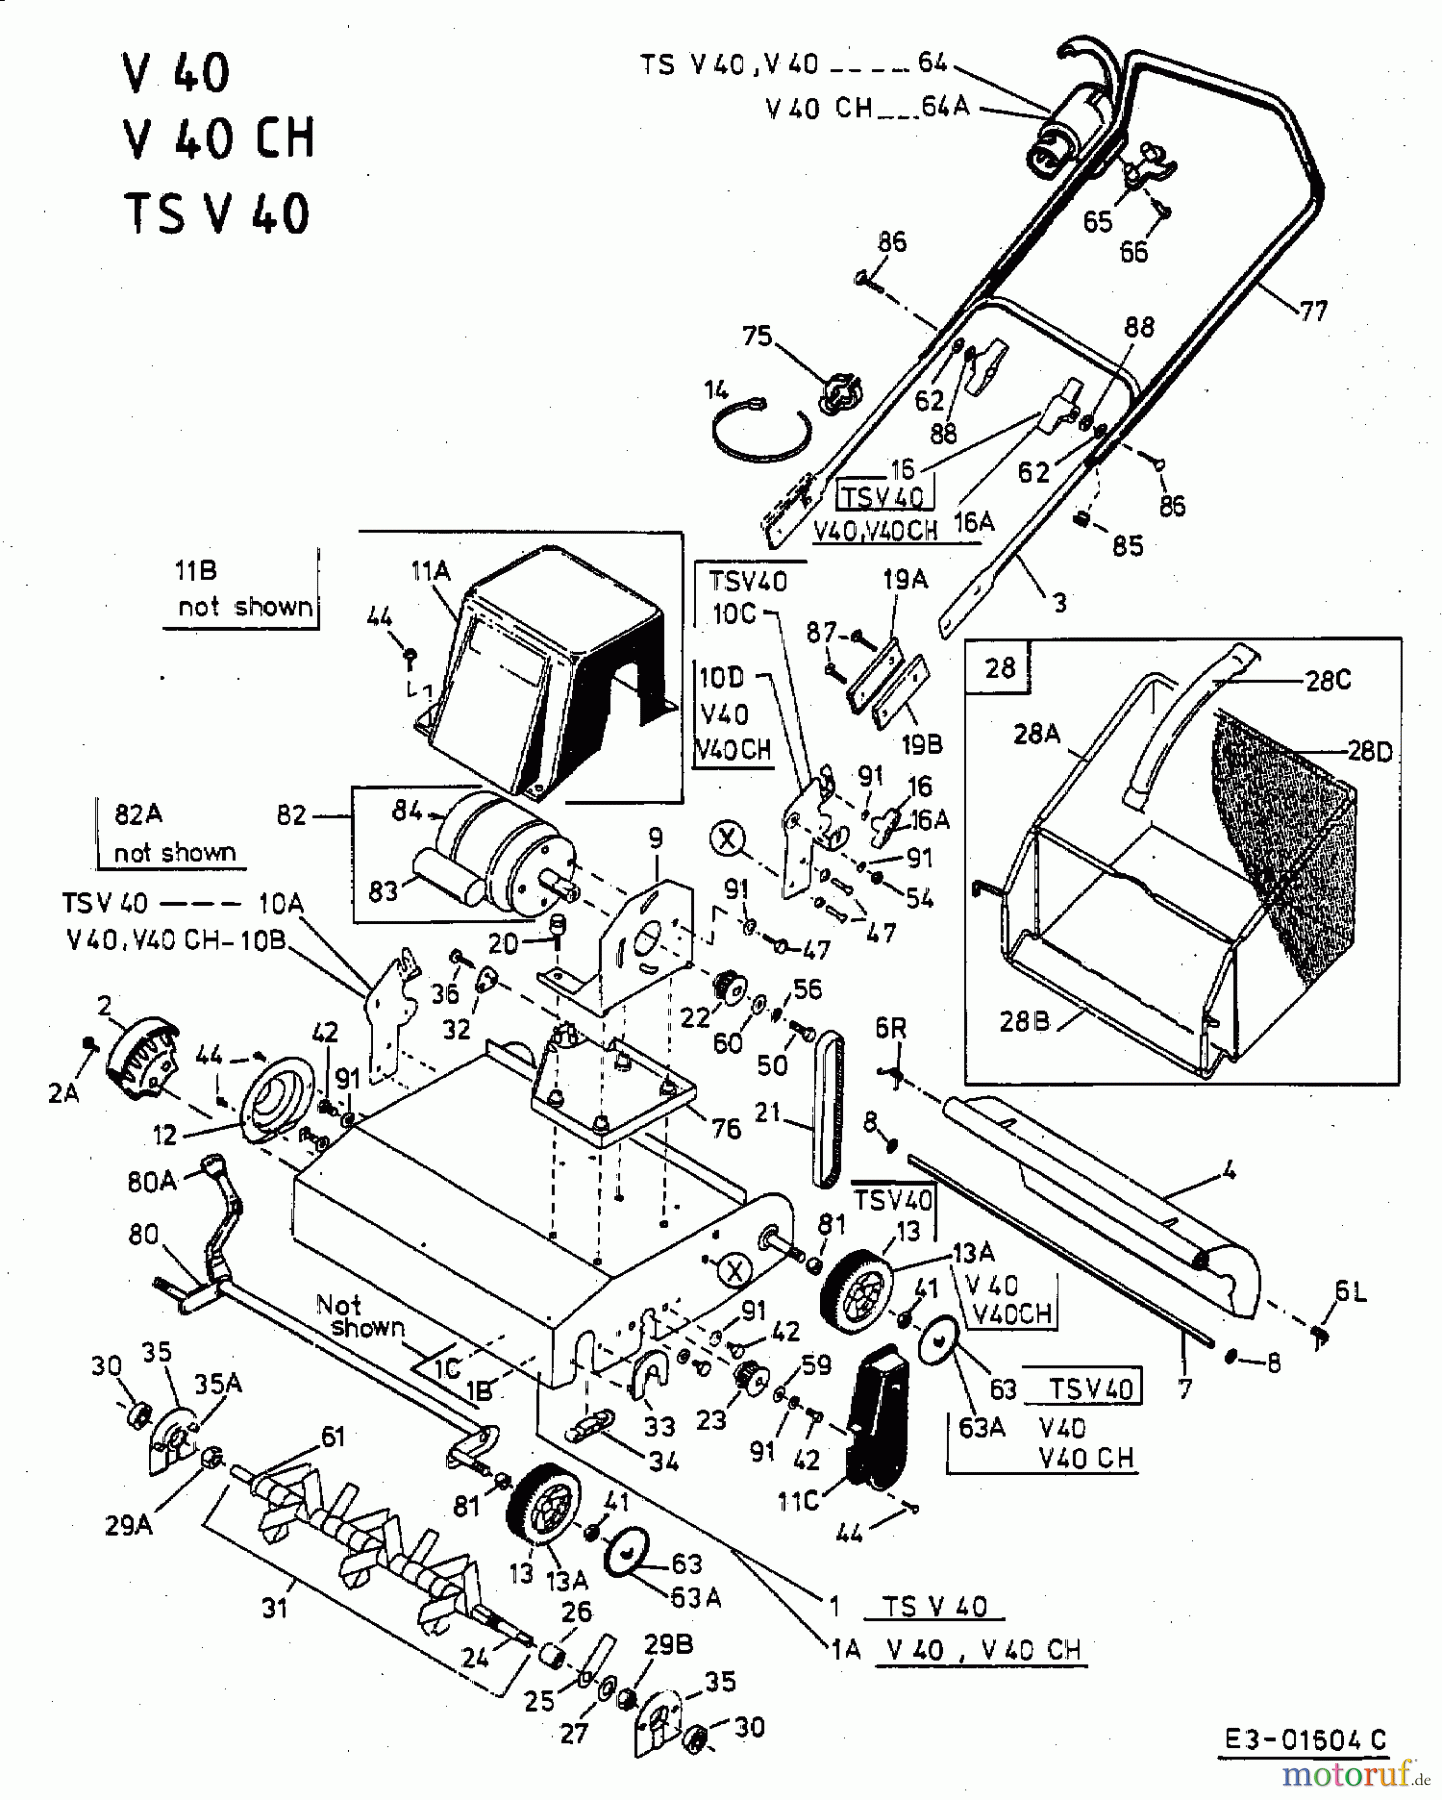  MTD Elektrovertikutierer V 40 16AEM0G-664  (2003) Grundgerät